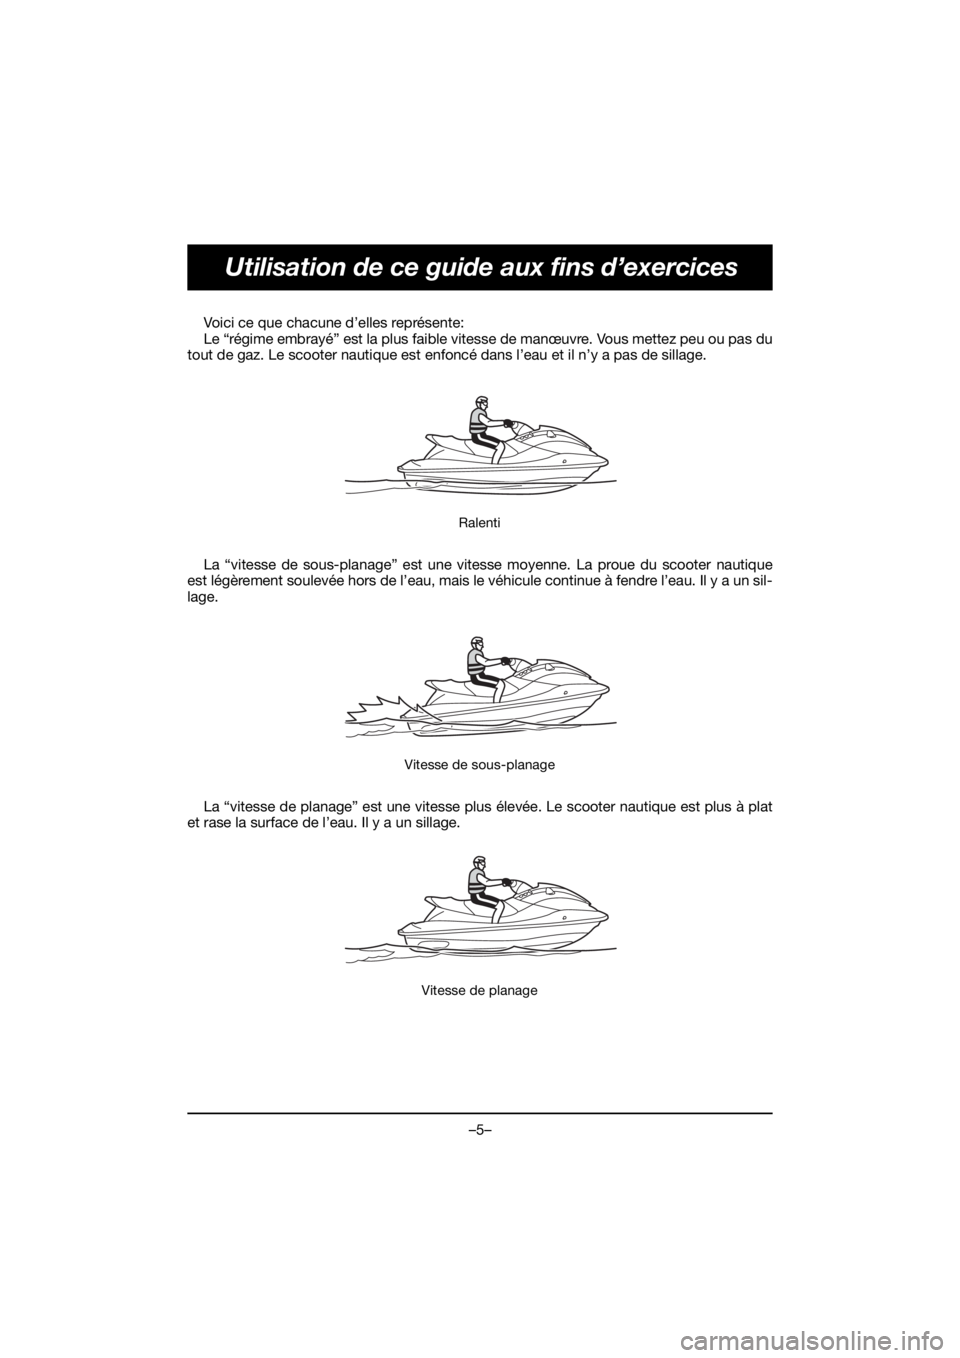 YAMAHA GP1800R SVHO 2020  Bruksanvisningar (in Swedish) –5–
Utilisation de ce guide aux fins d’exercices
Voici ce que chacune d’elles représente: 
Le “régime embrayé” est la plus faible vitesse de manœuvre. Vous mettez peu ou pas du
tout de